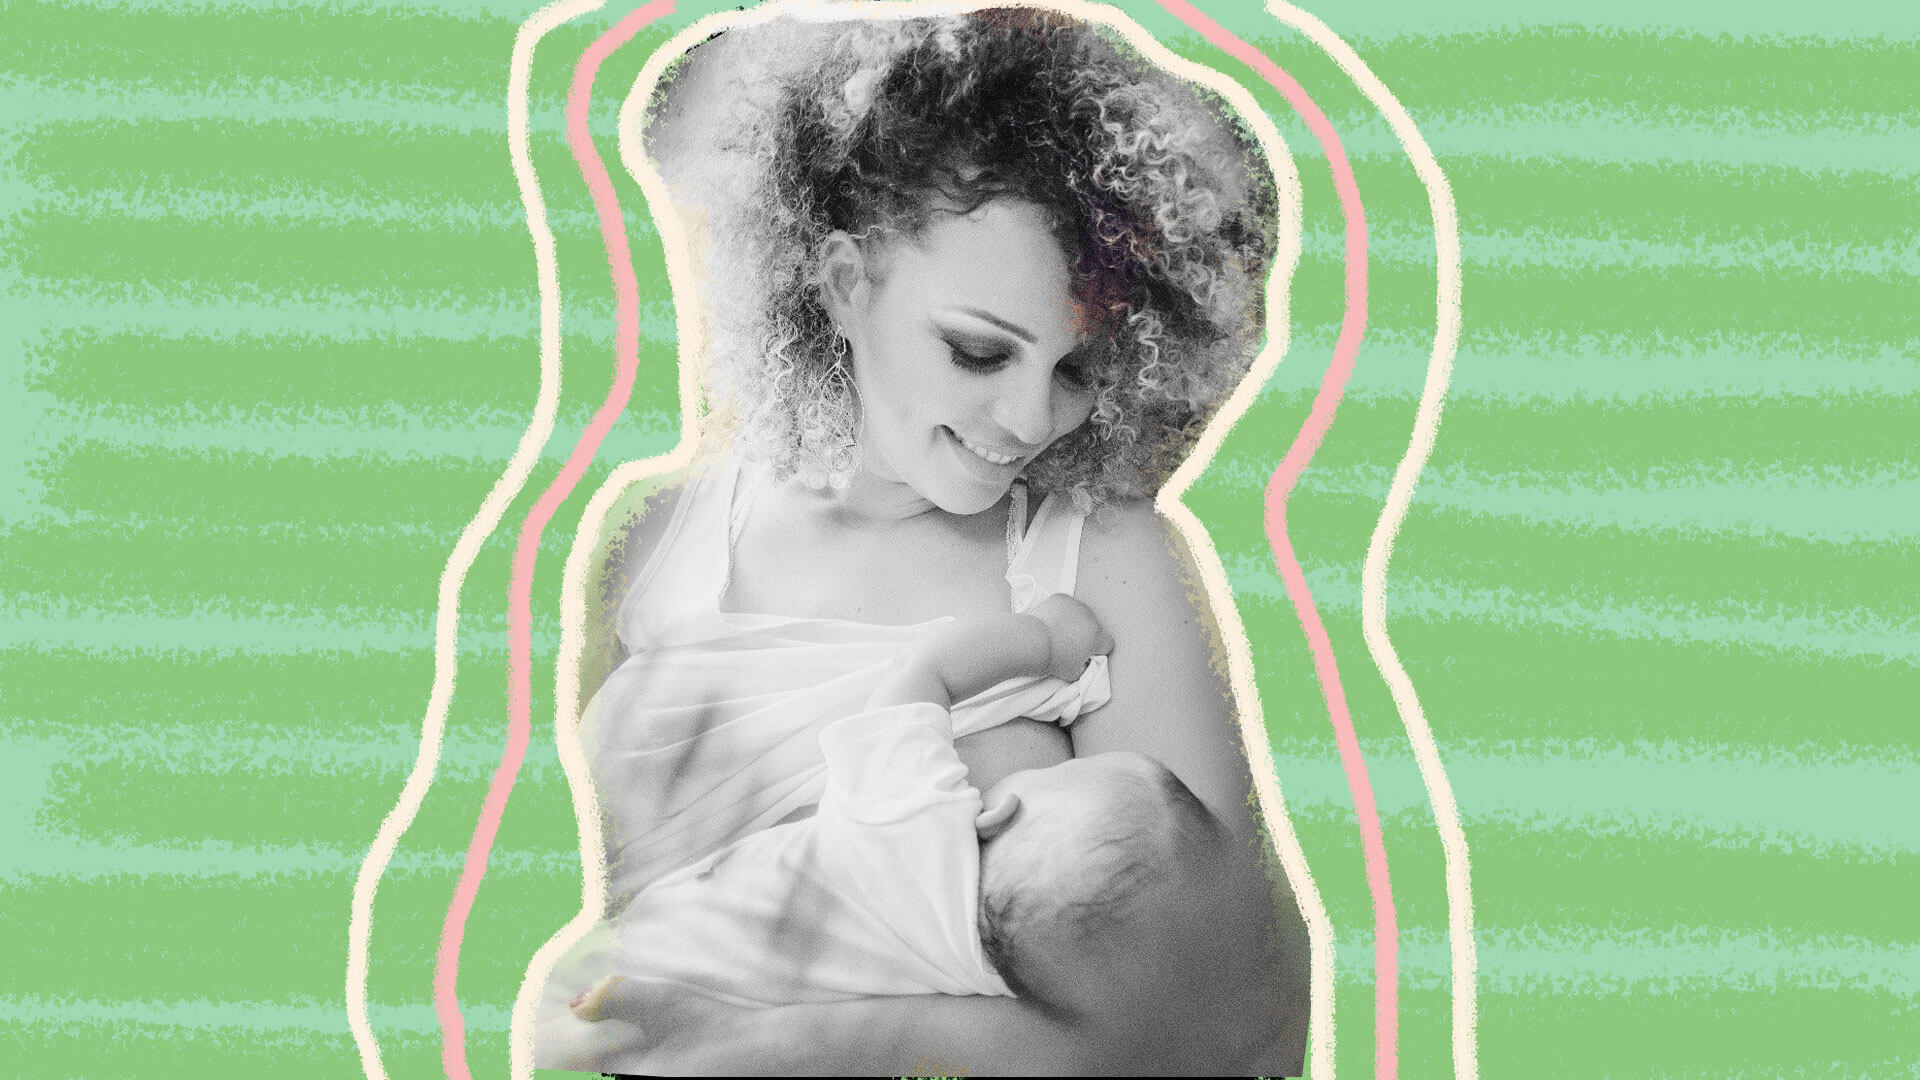 Foto em preto e branco. Mulher de cabelo cacheado amamenta um bebe que está segurando no colo.